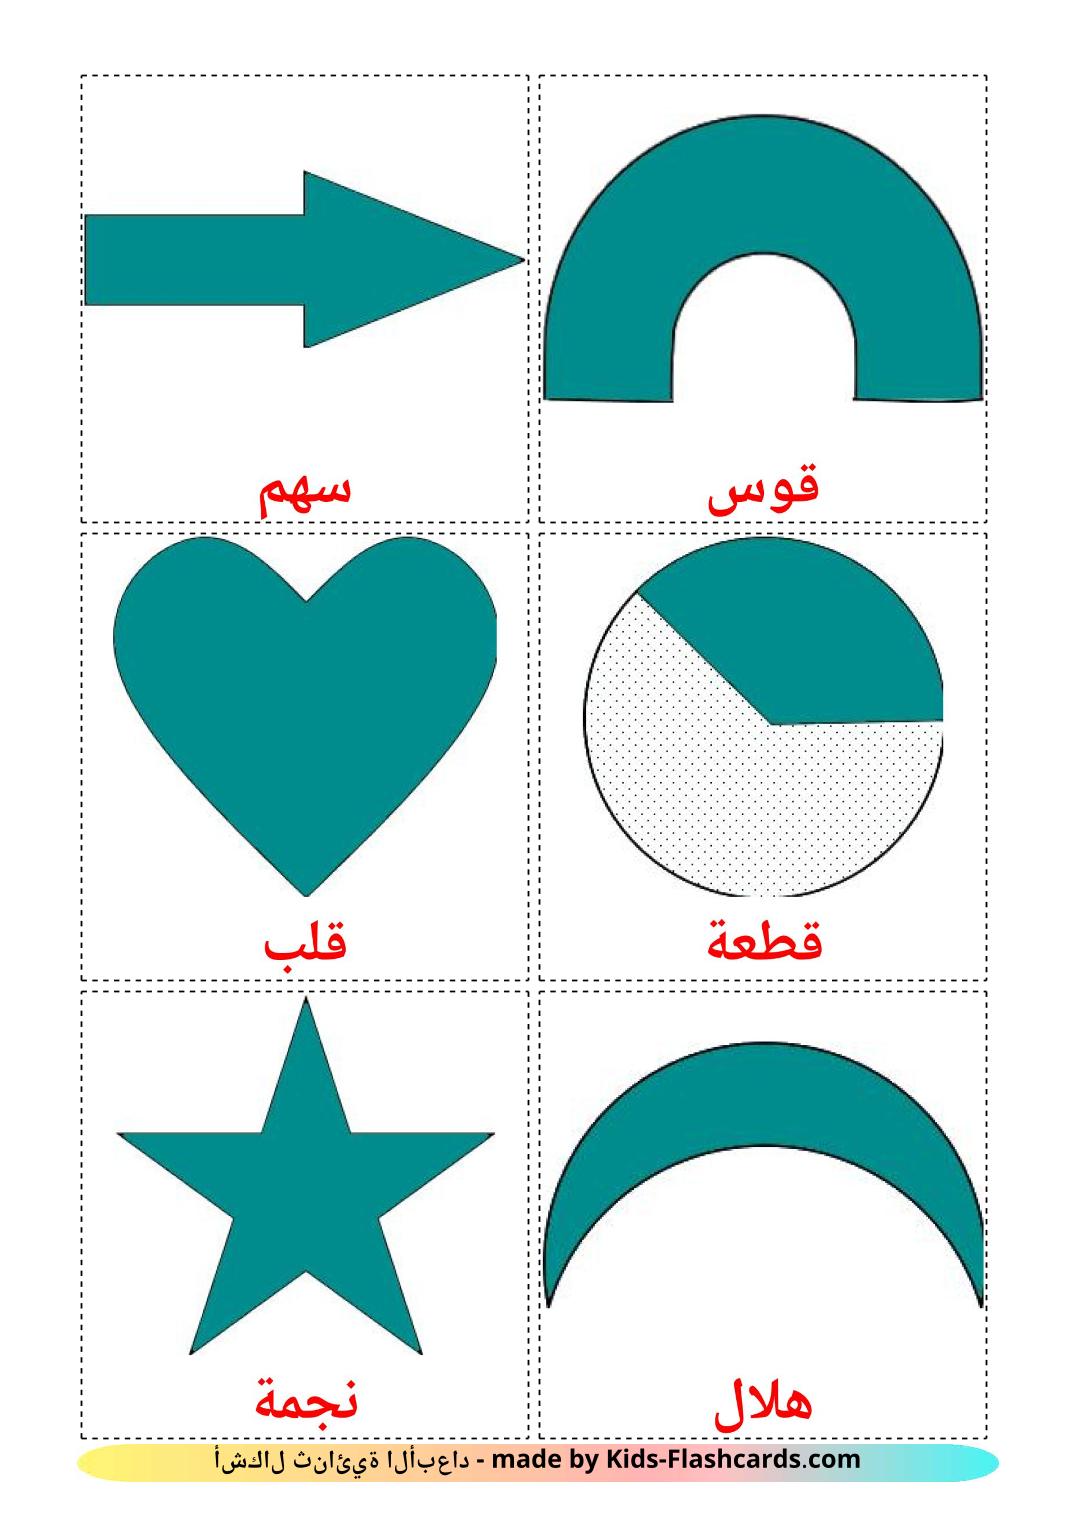 Формы 2D - 35 Карточек Домана на арабском